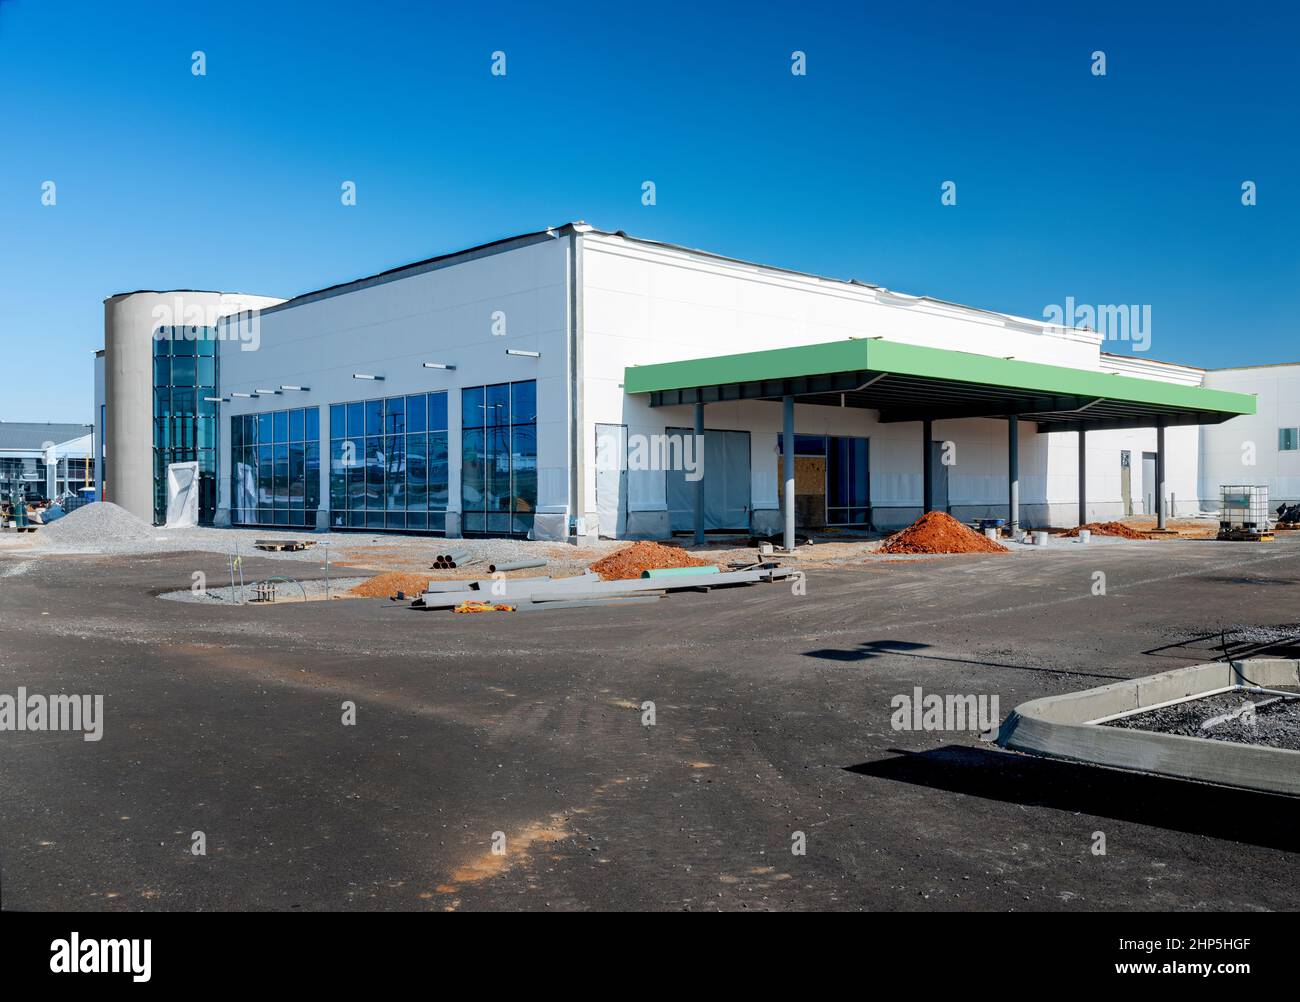 Tiro horizontal de una gran tienda minorista de cajas grandes bajo construcción bajo un cielo azul. Foto de stock